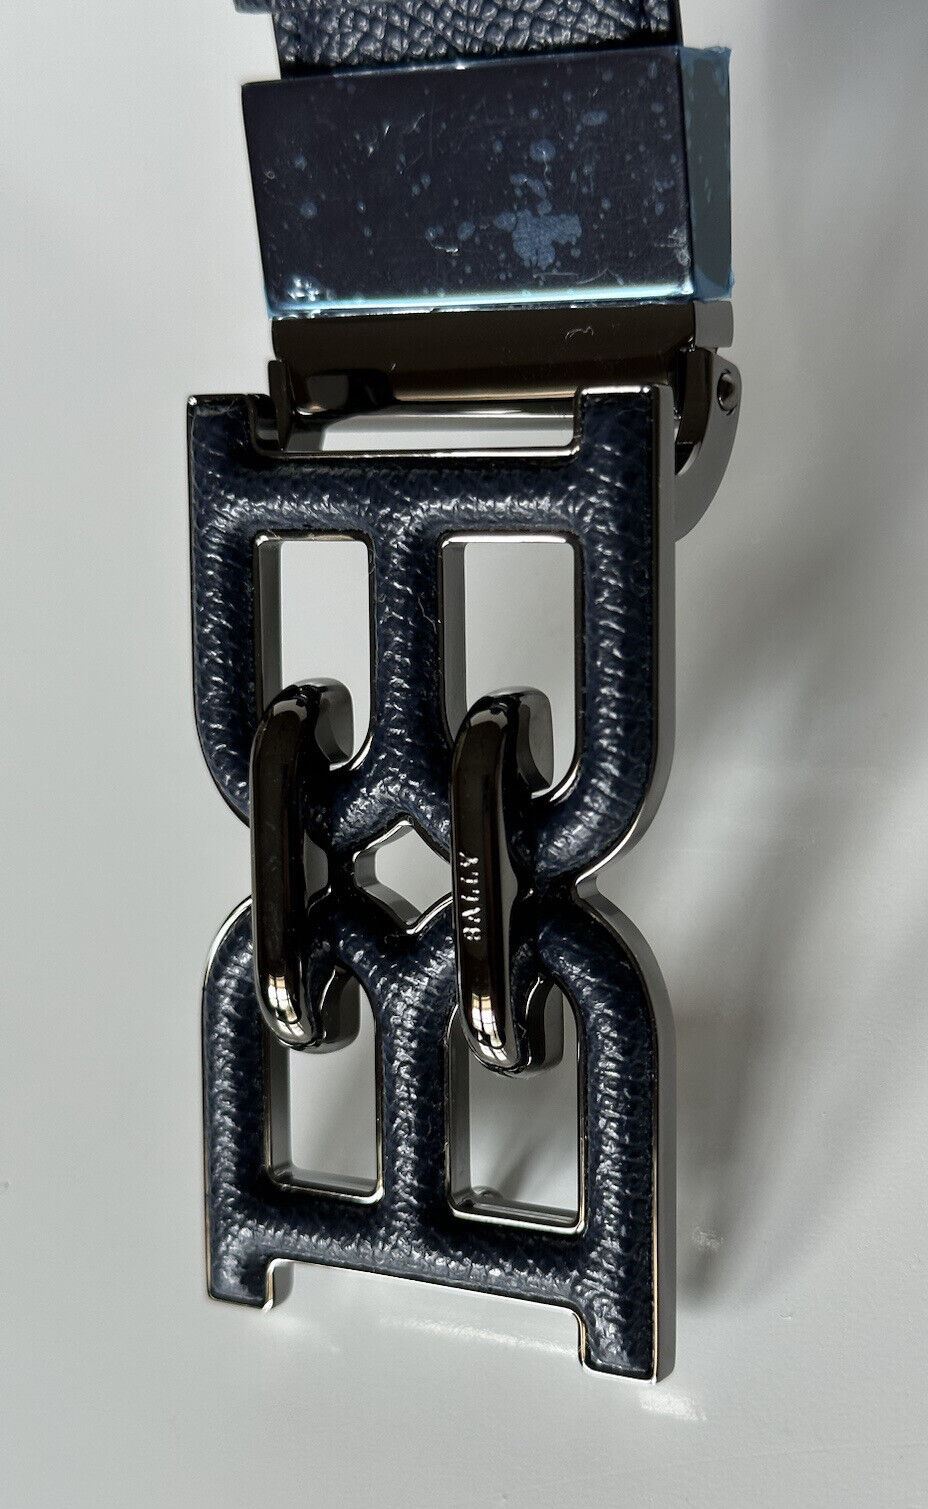 Neu mit Etikett: 450 $ Bally Herrengürtel mit doppelseitiger B-Kette, blau, 44/110, hergestellt in Italien, 6301462 